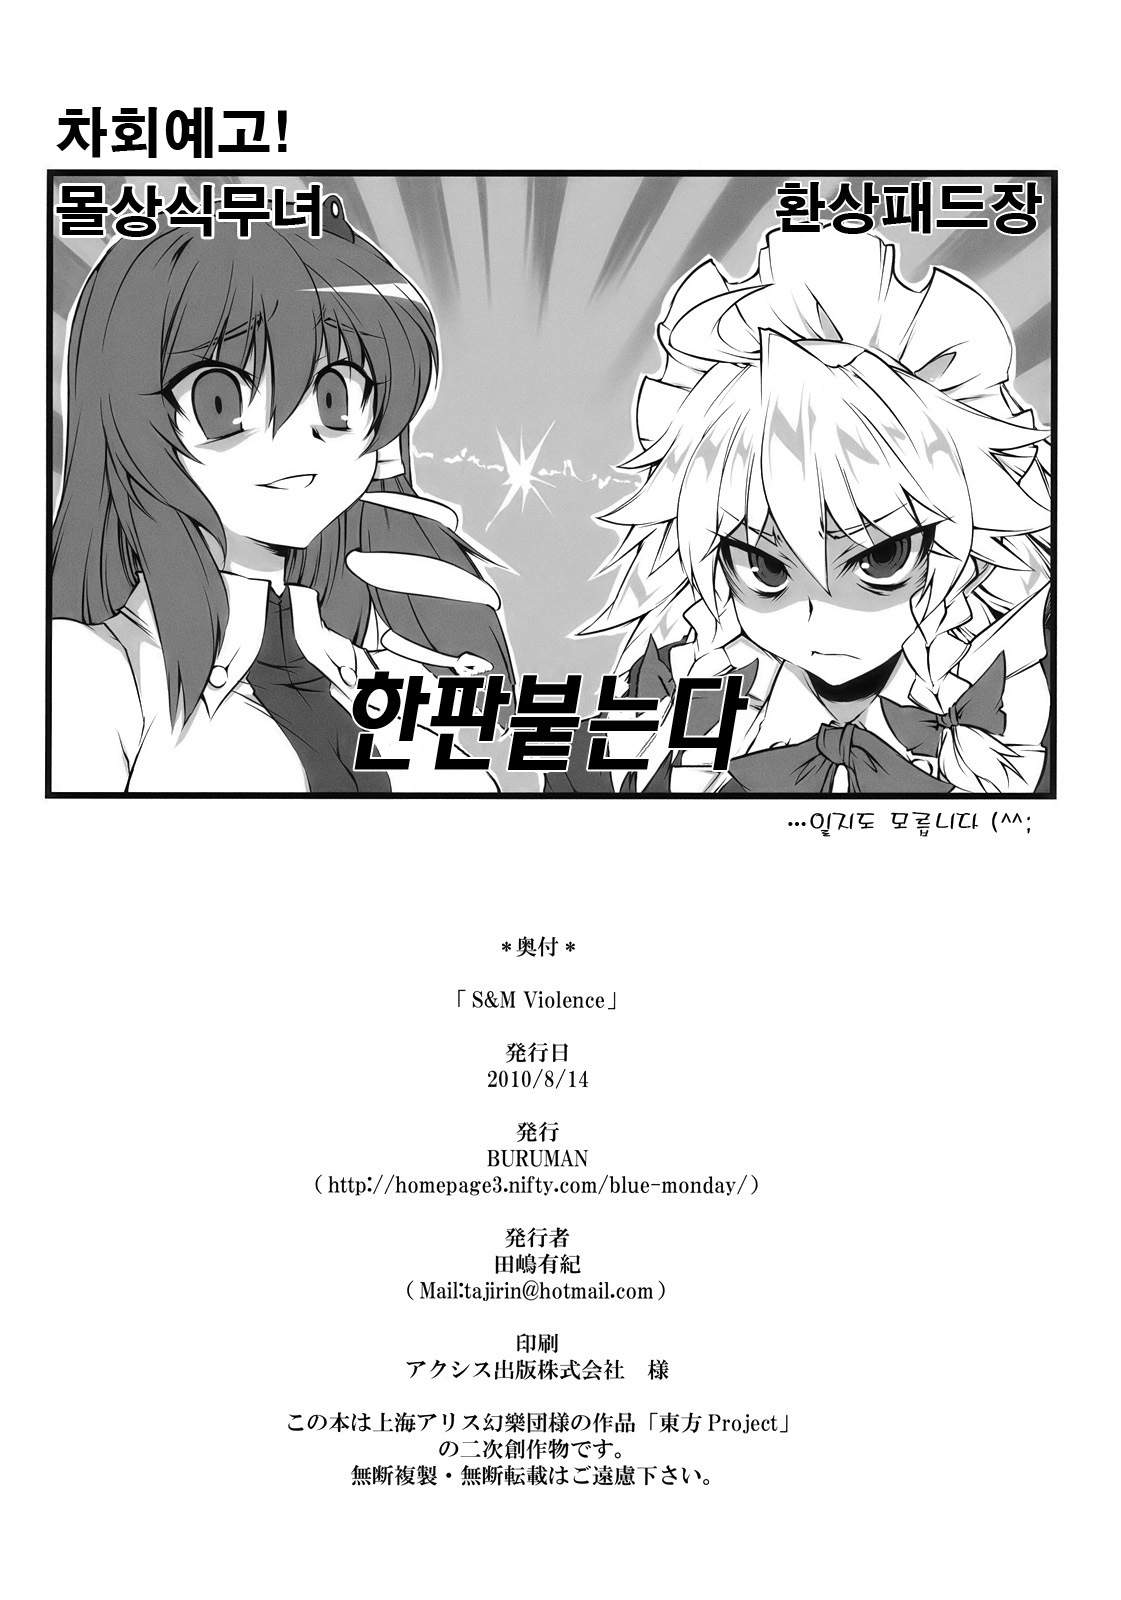 [100905][BURUMAN]S&MViolence(korean) page 18 full